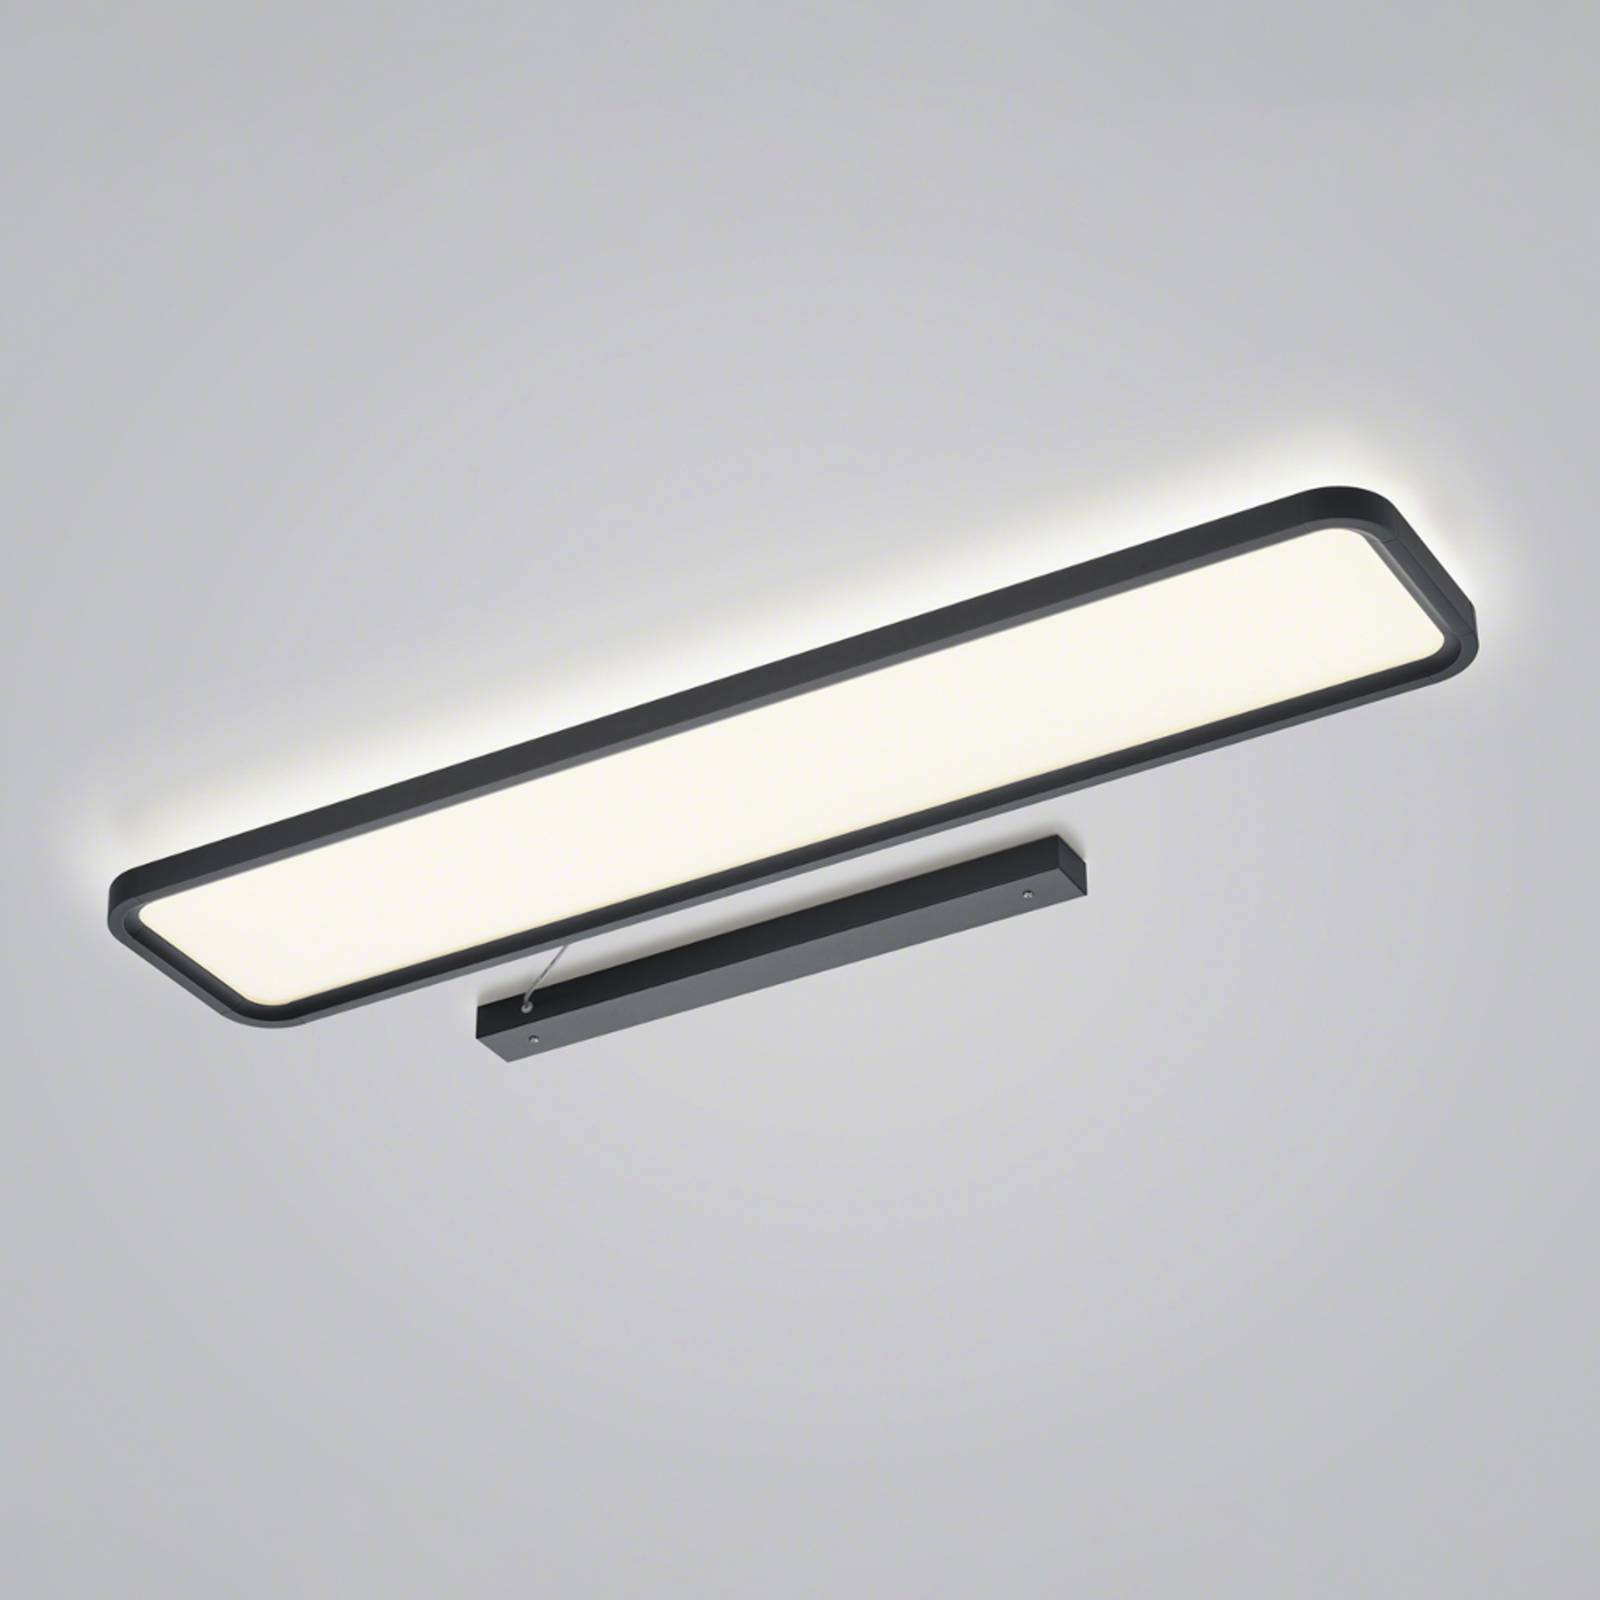 E-shop Helestra Vesp LED panel backlight 120x26 cm čierna